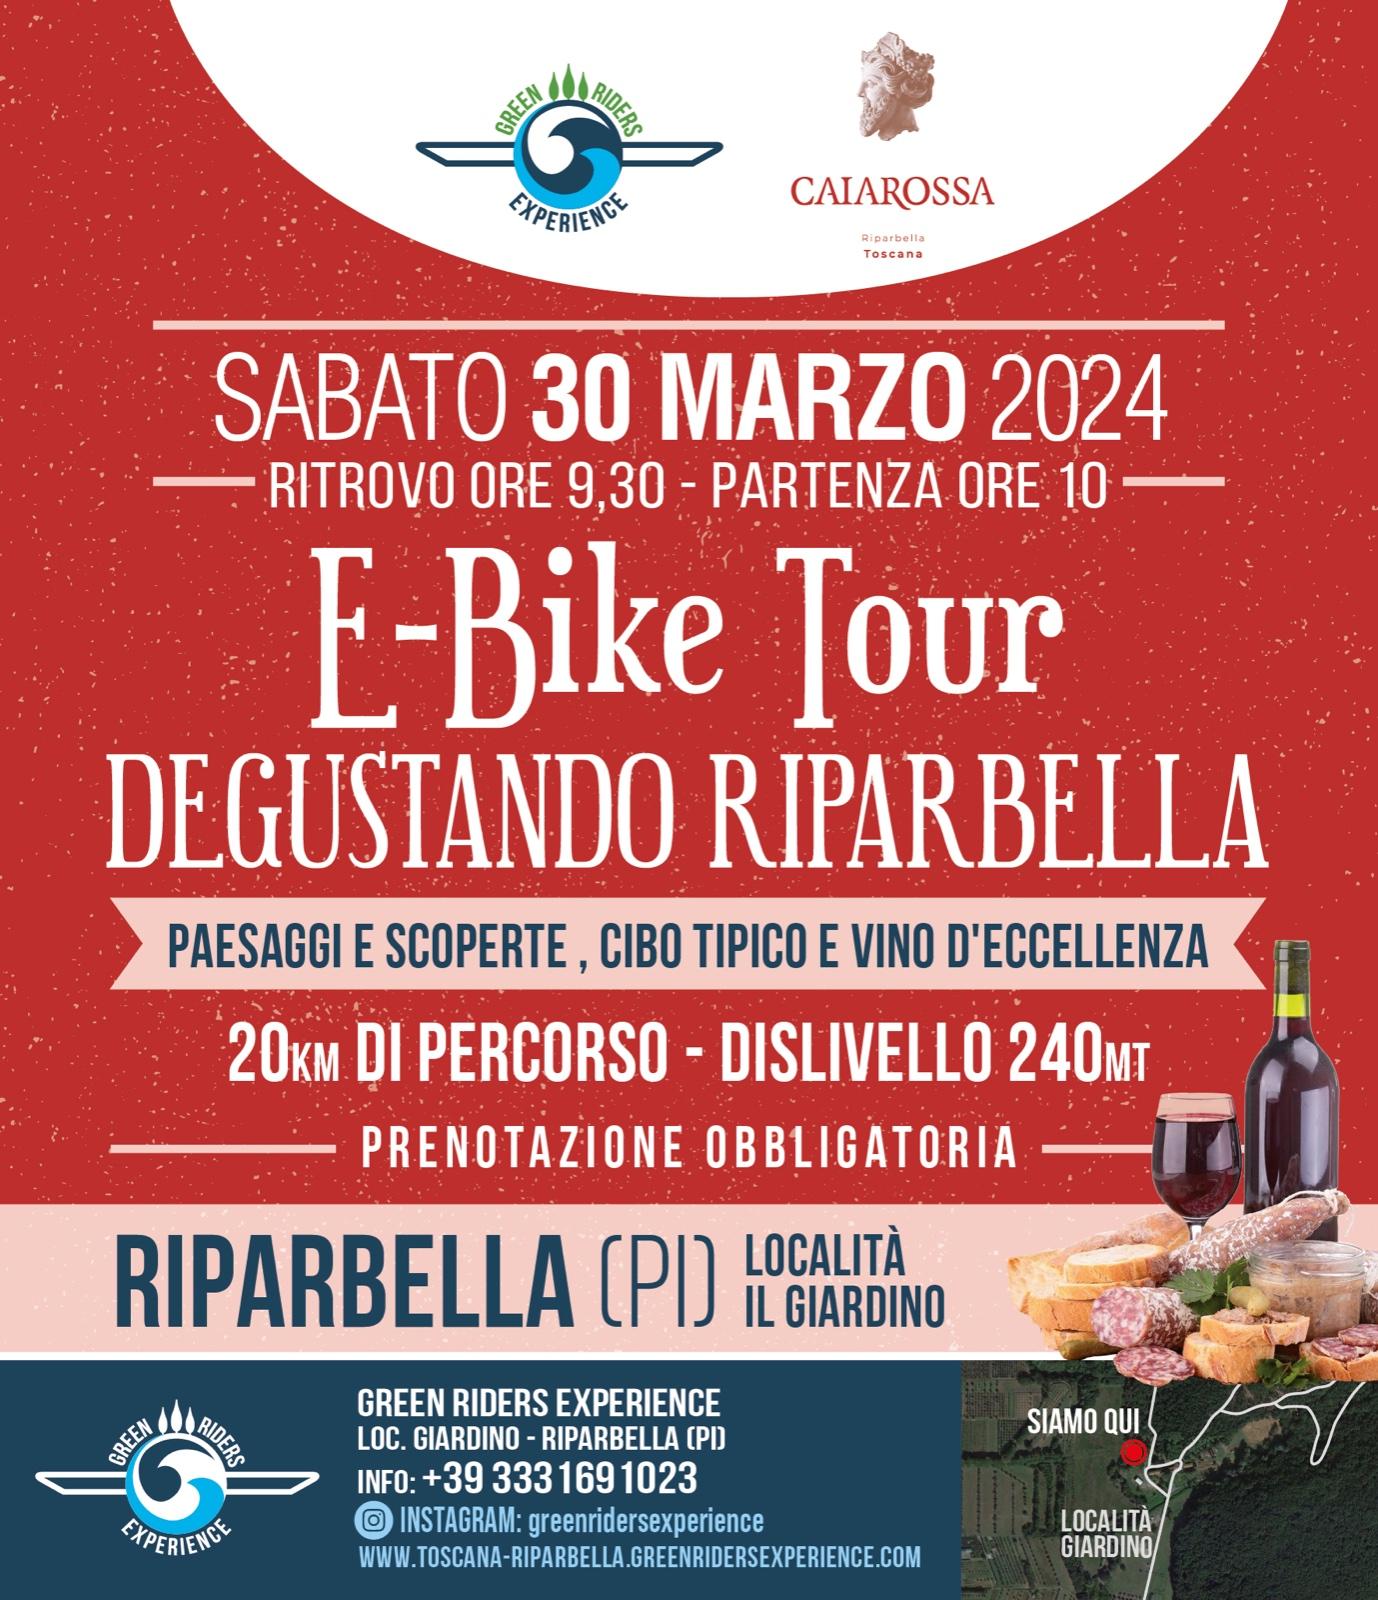 E-bike Tour Degustando RIparbella 30 Marzo  Prenotazione Senza bici 